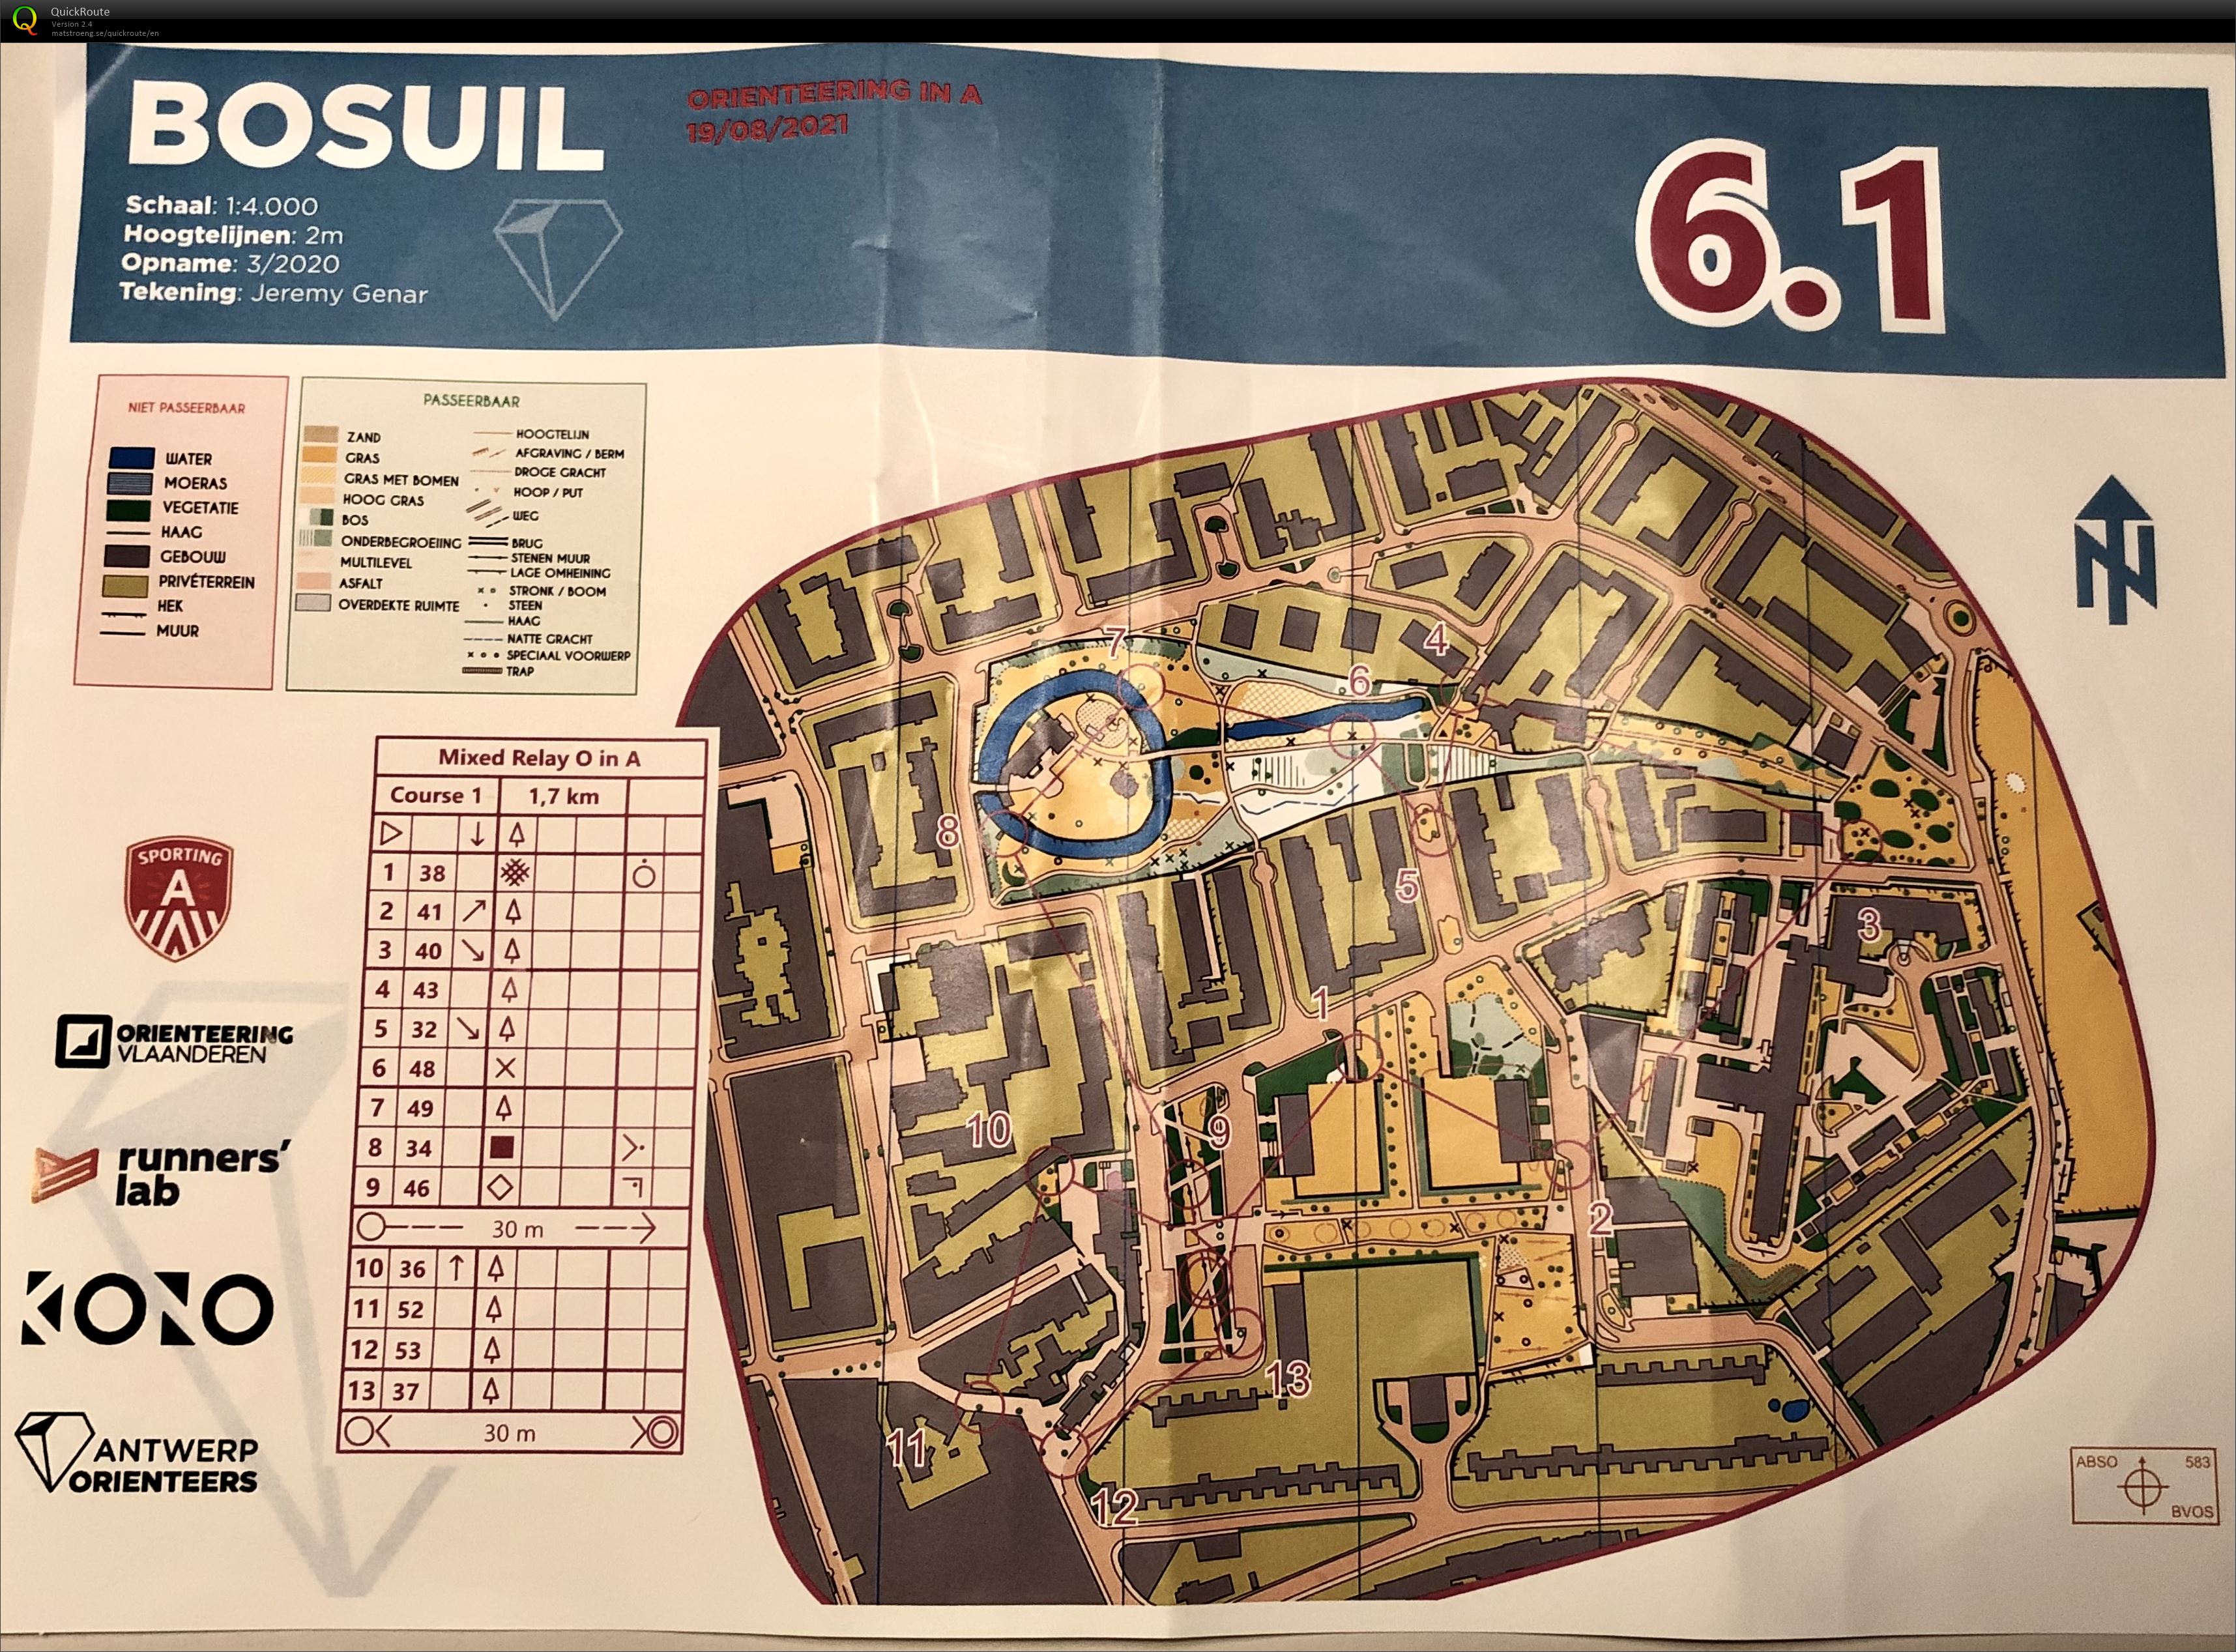 Antwerp Orienteers Team Relay Bosuil 6.3 (19/08/2021)